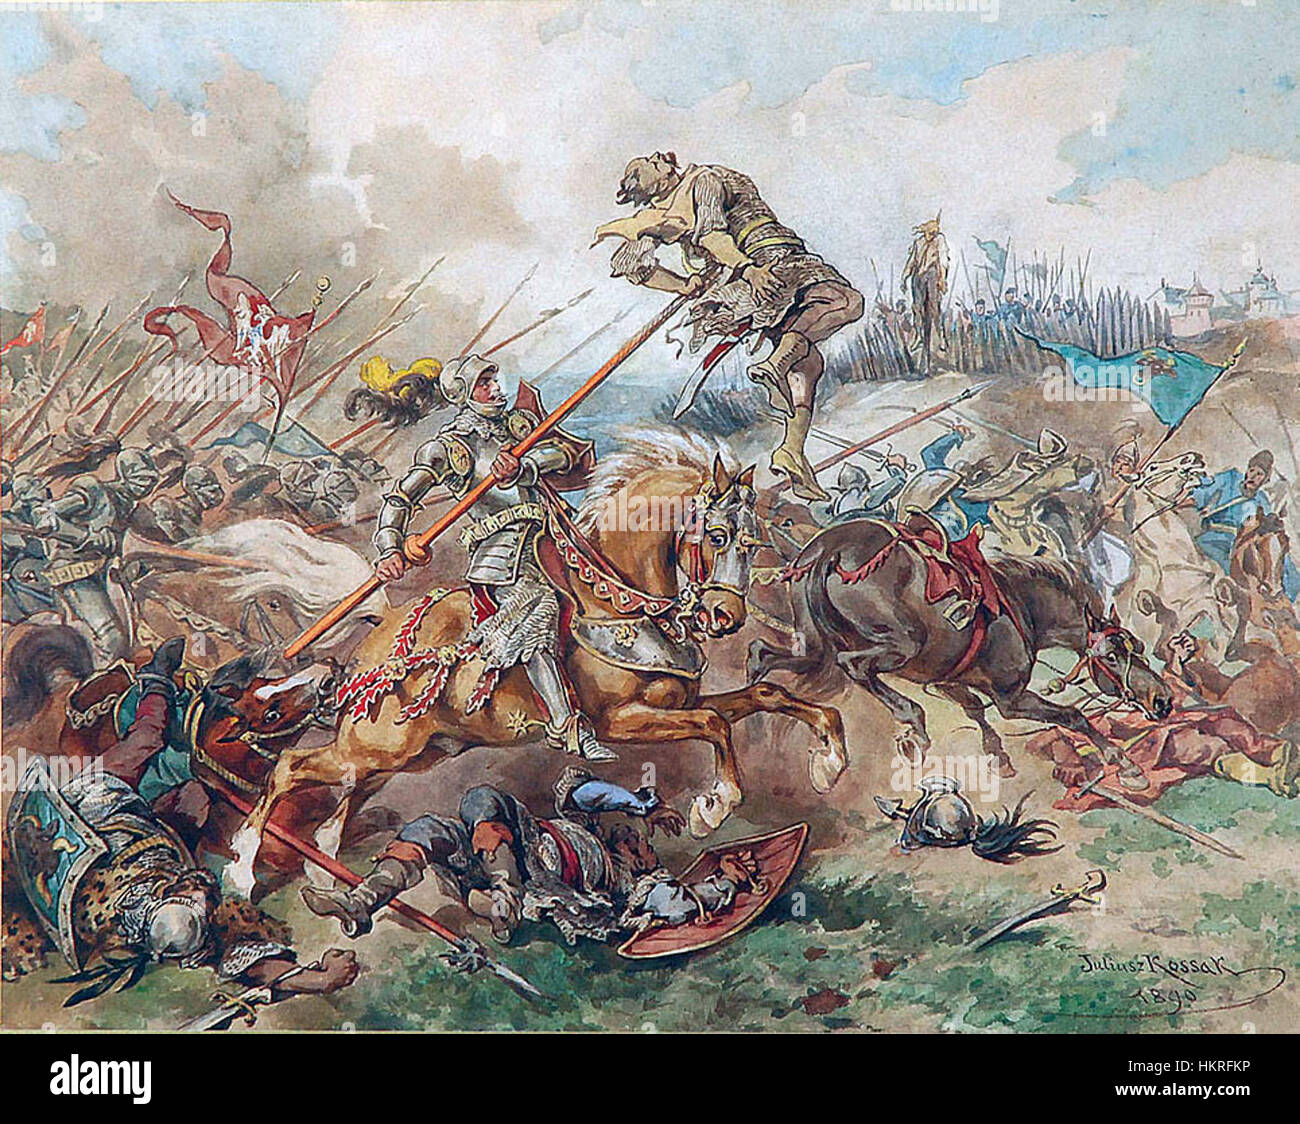 Cherubin Gniewosz nella battaglia di Suceava 1497 Foto Stock